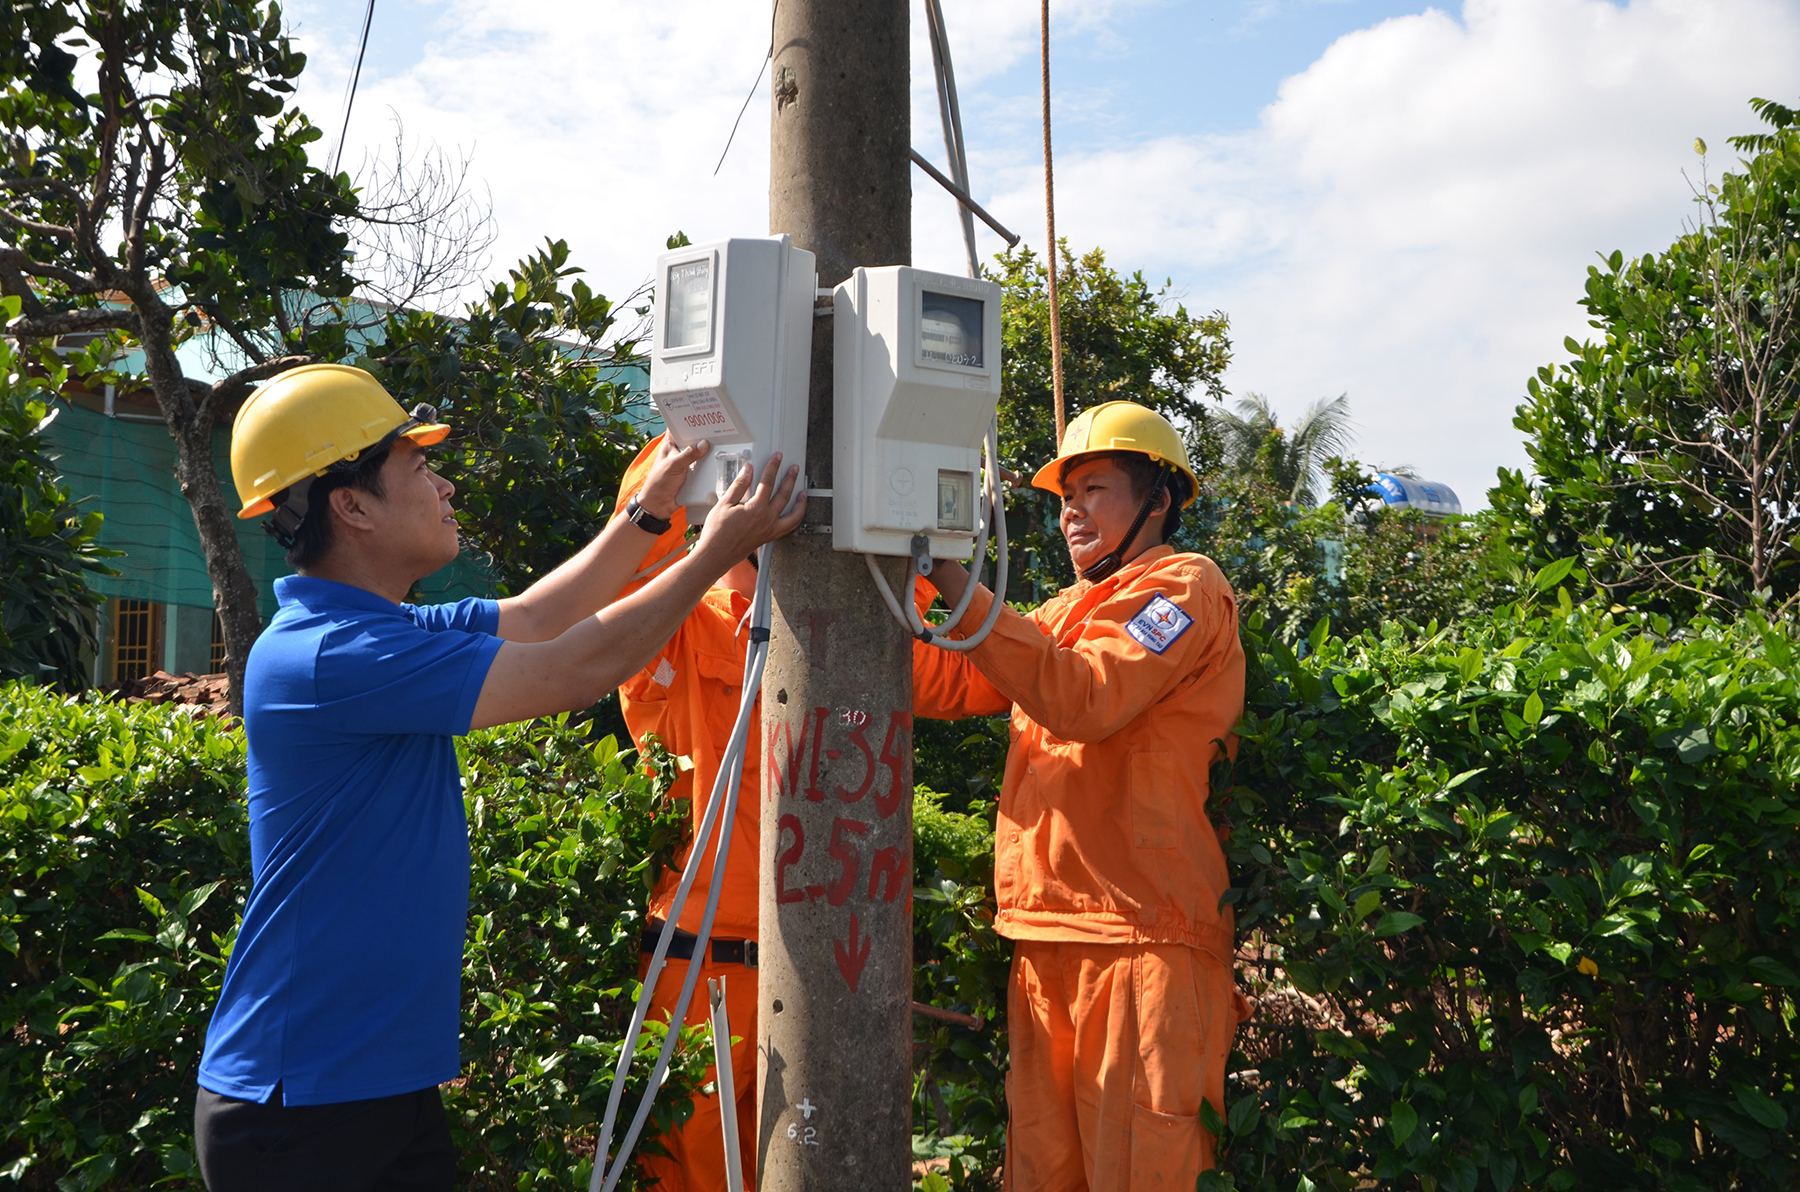 ĐVTN lắp đặt đèn “thắp sáng đường quê” tại xã Bưng Riềng, huyện Xuyên Mộc trong chiến dịch “Hành quân xanh” do Tỉnh Đoàn tổ chức.